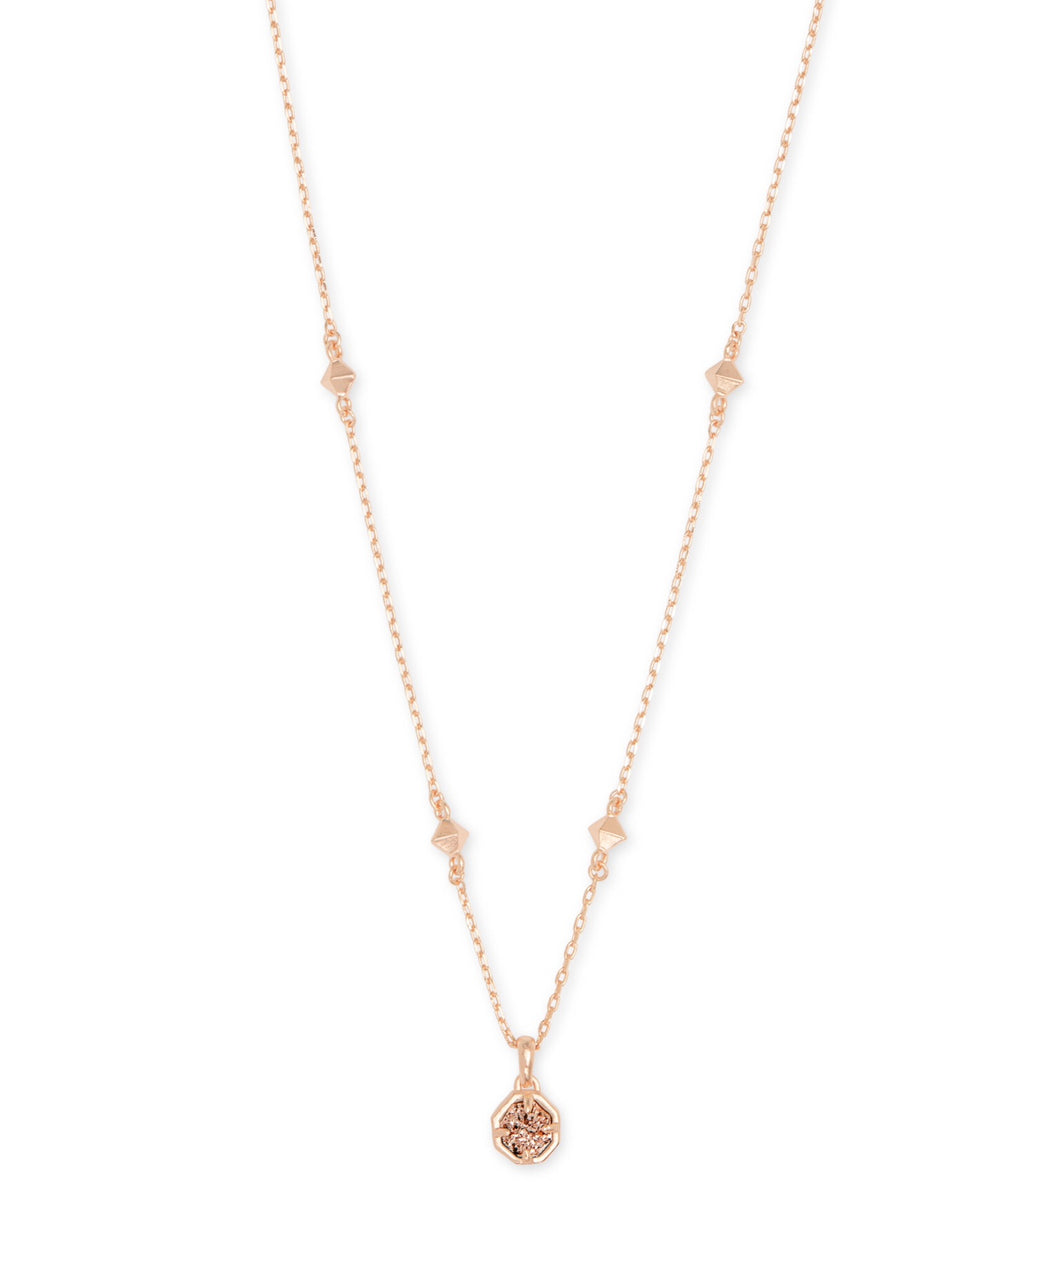 Kendra Scott: Nola Short Rose Gold Necklace - The Vogue Boutique